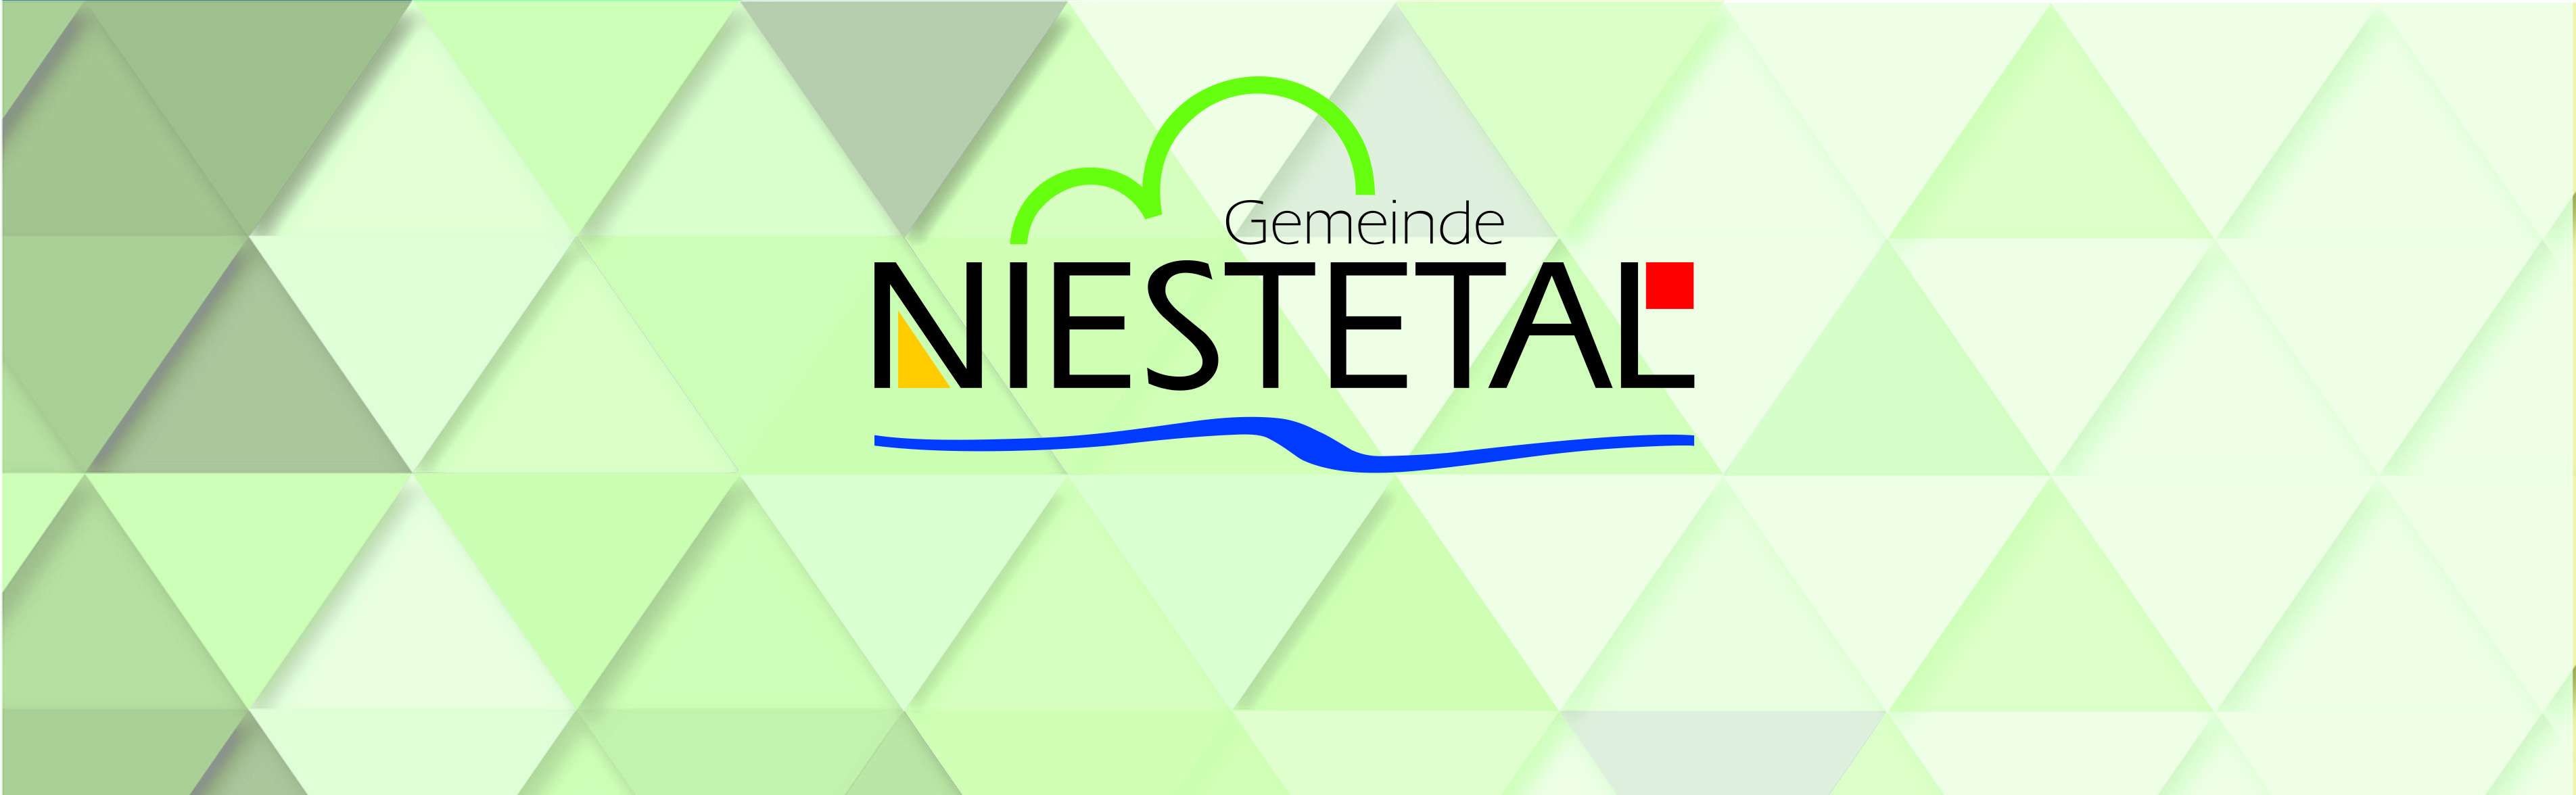 Bild zeigt das Logo der Gemeinde Niestetal und die Überschrift: Pressemitteilung